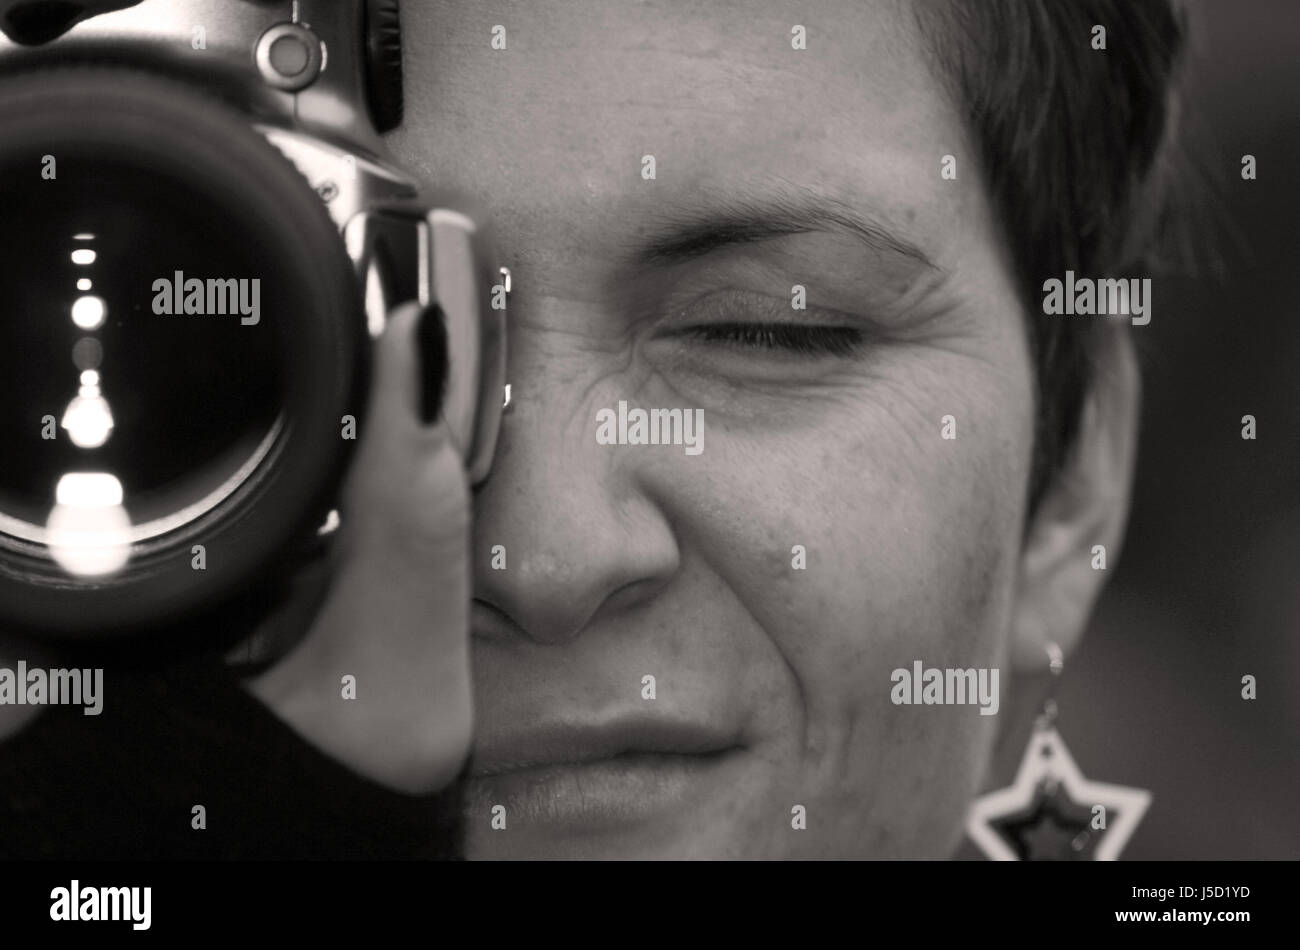 woman women face portrait eye organ skin bw photo camera earring ear rings Stock Photo